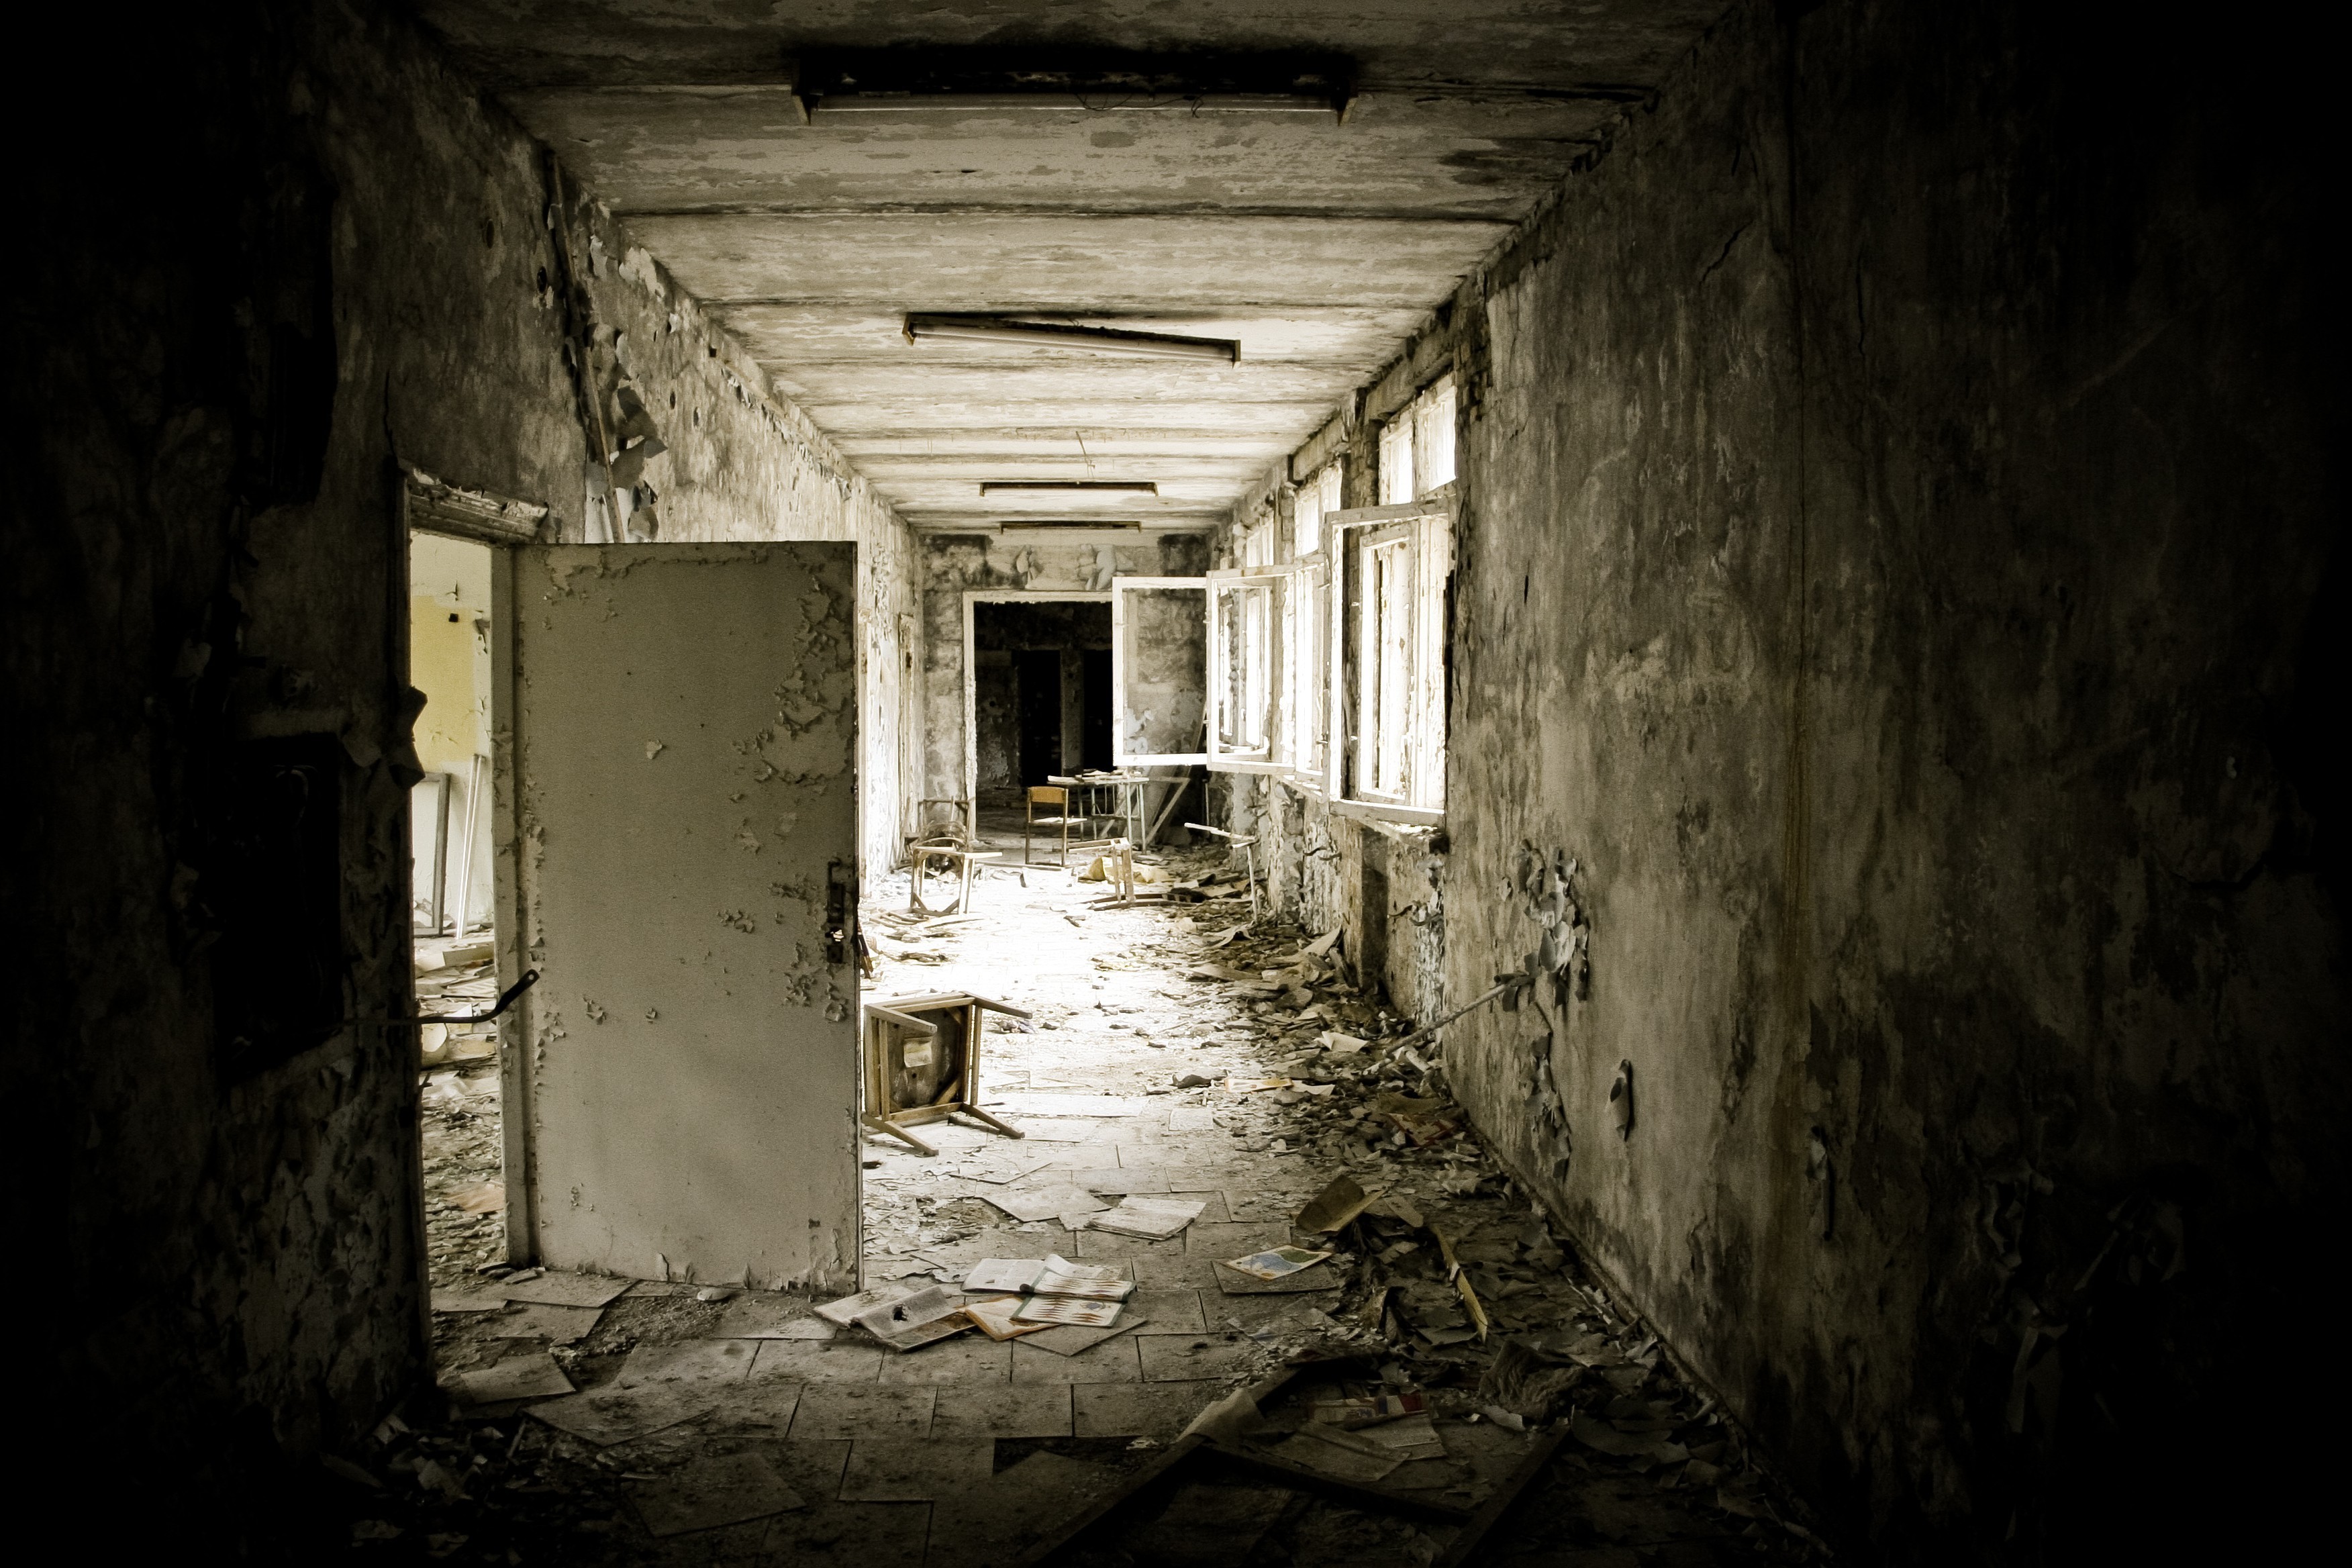 General 3504x2336 indoors Chernobyl abandoned door window ruins Ukraine